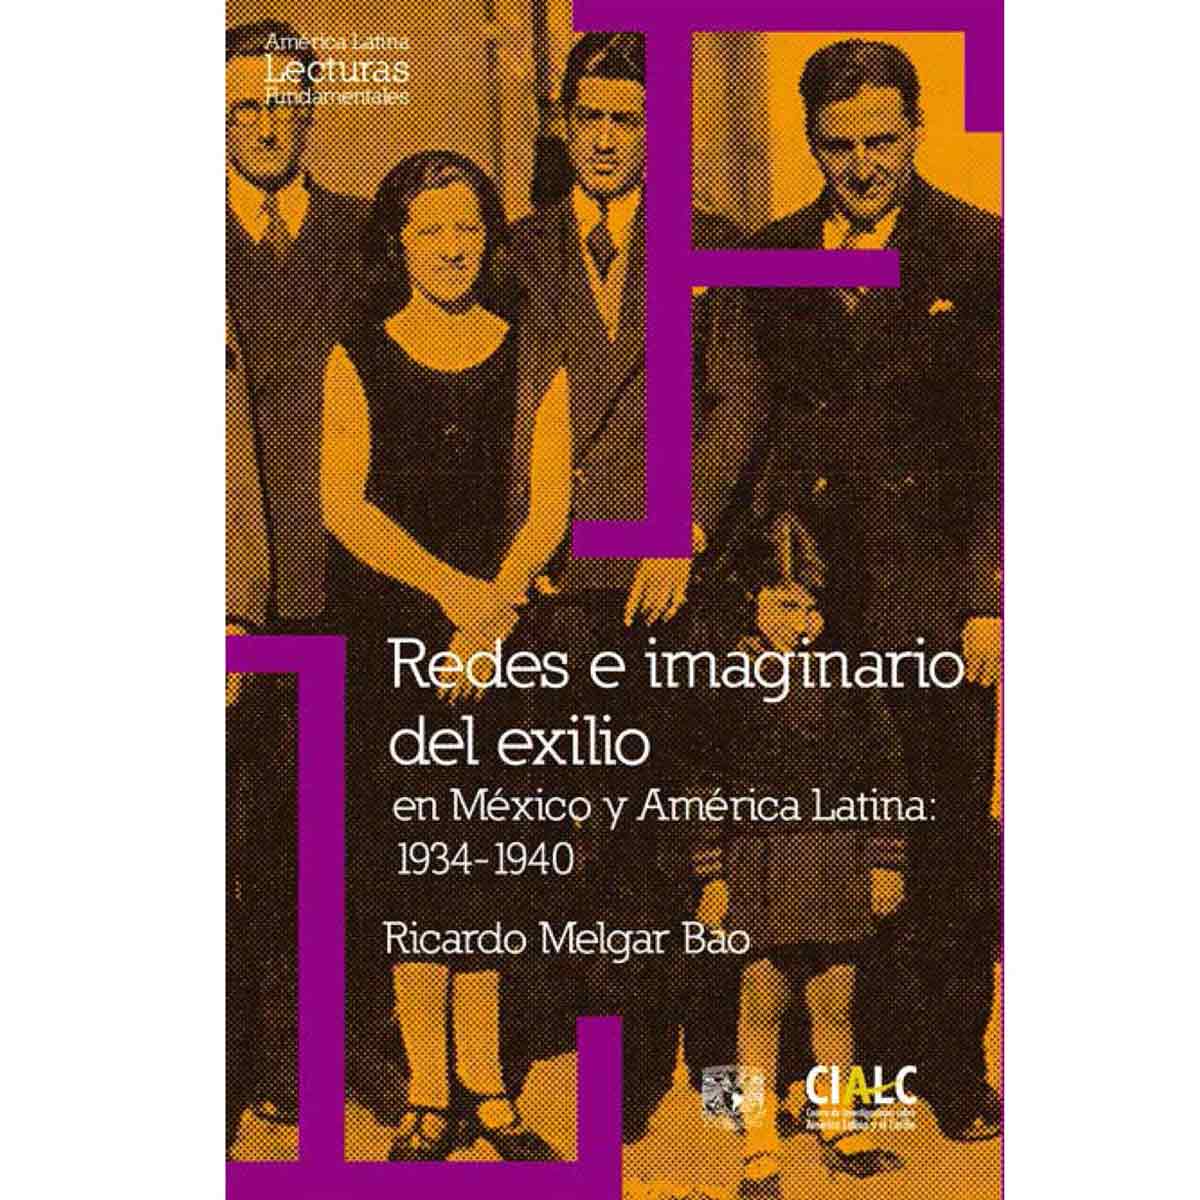 REDES E IMAGINARIO DEL EXILIO EN MÉXICO Y AMÉRICA LATINA: 1934-1940